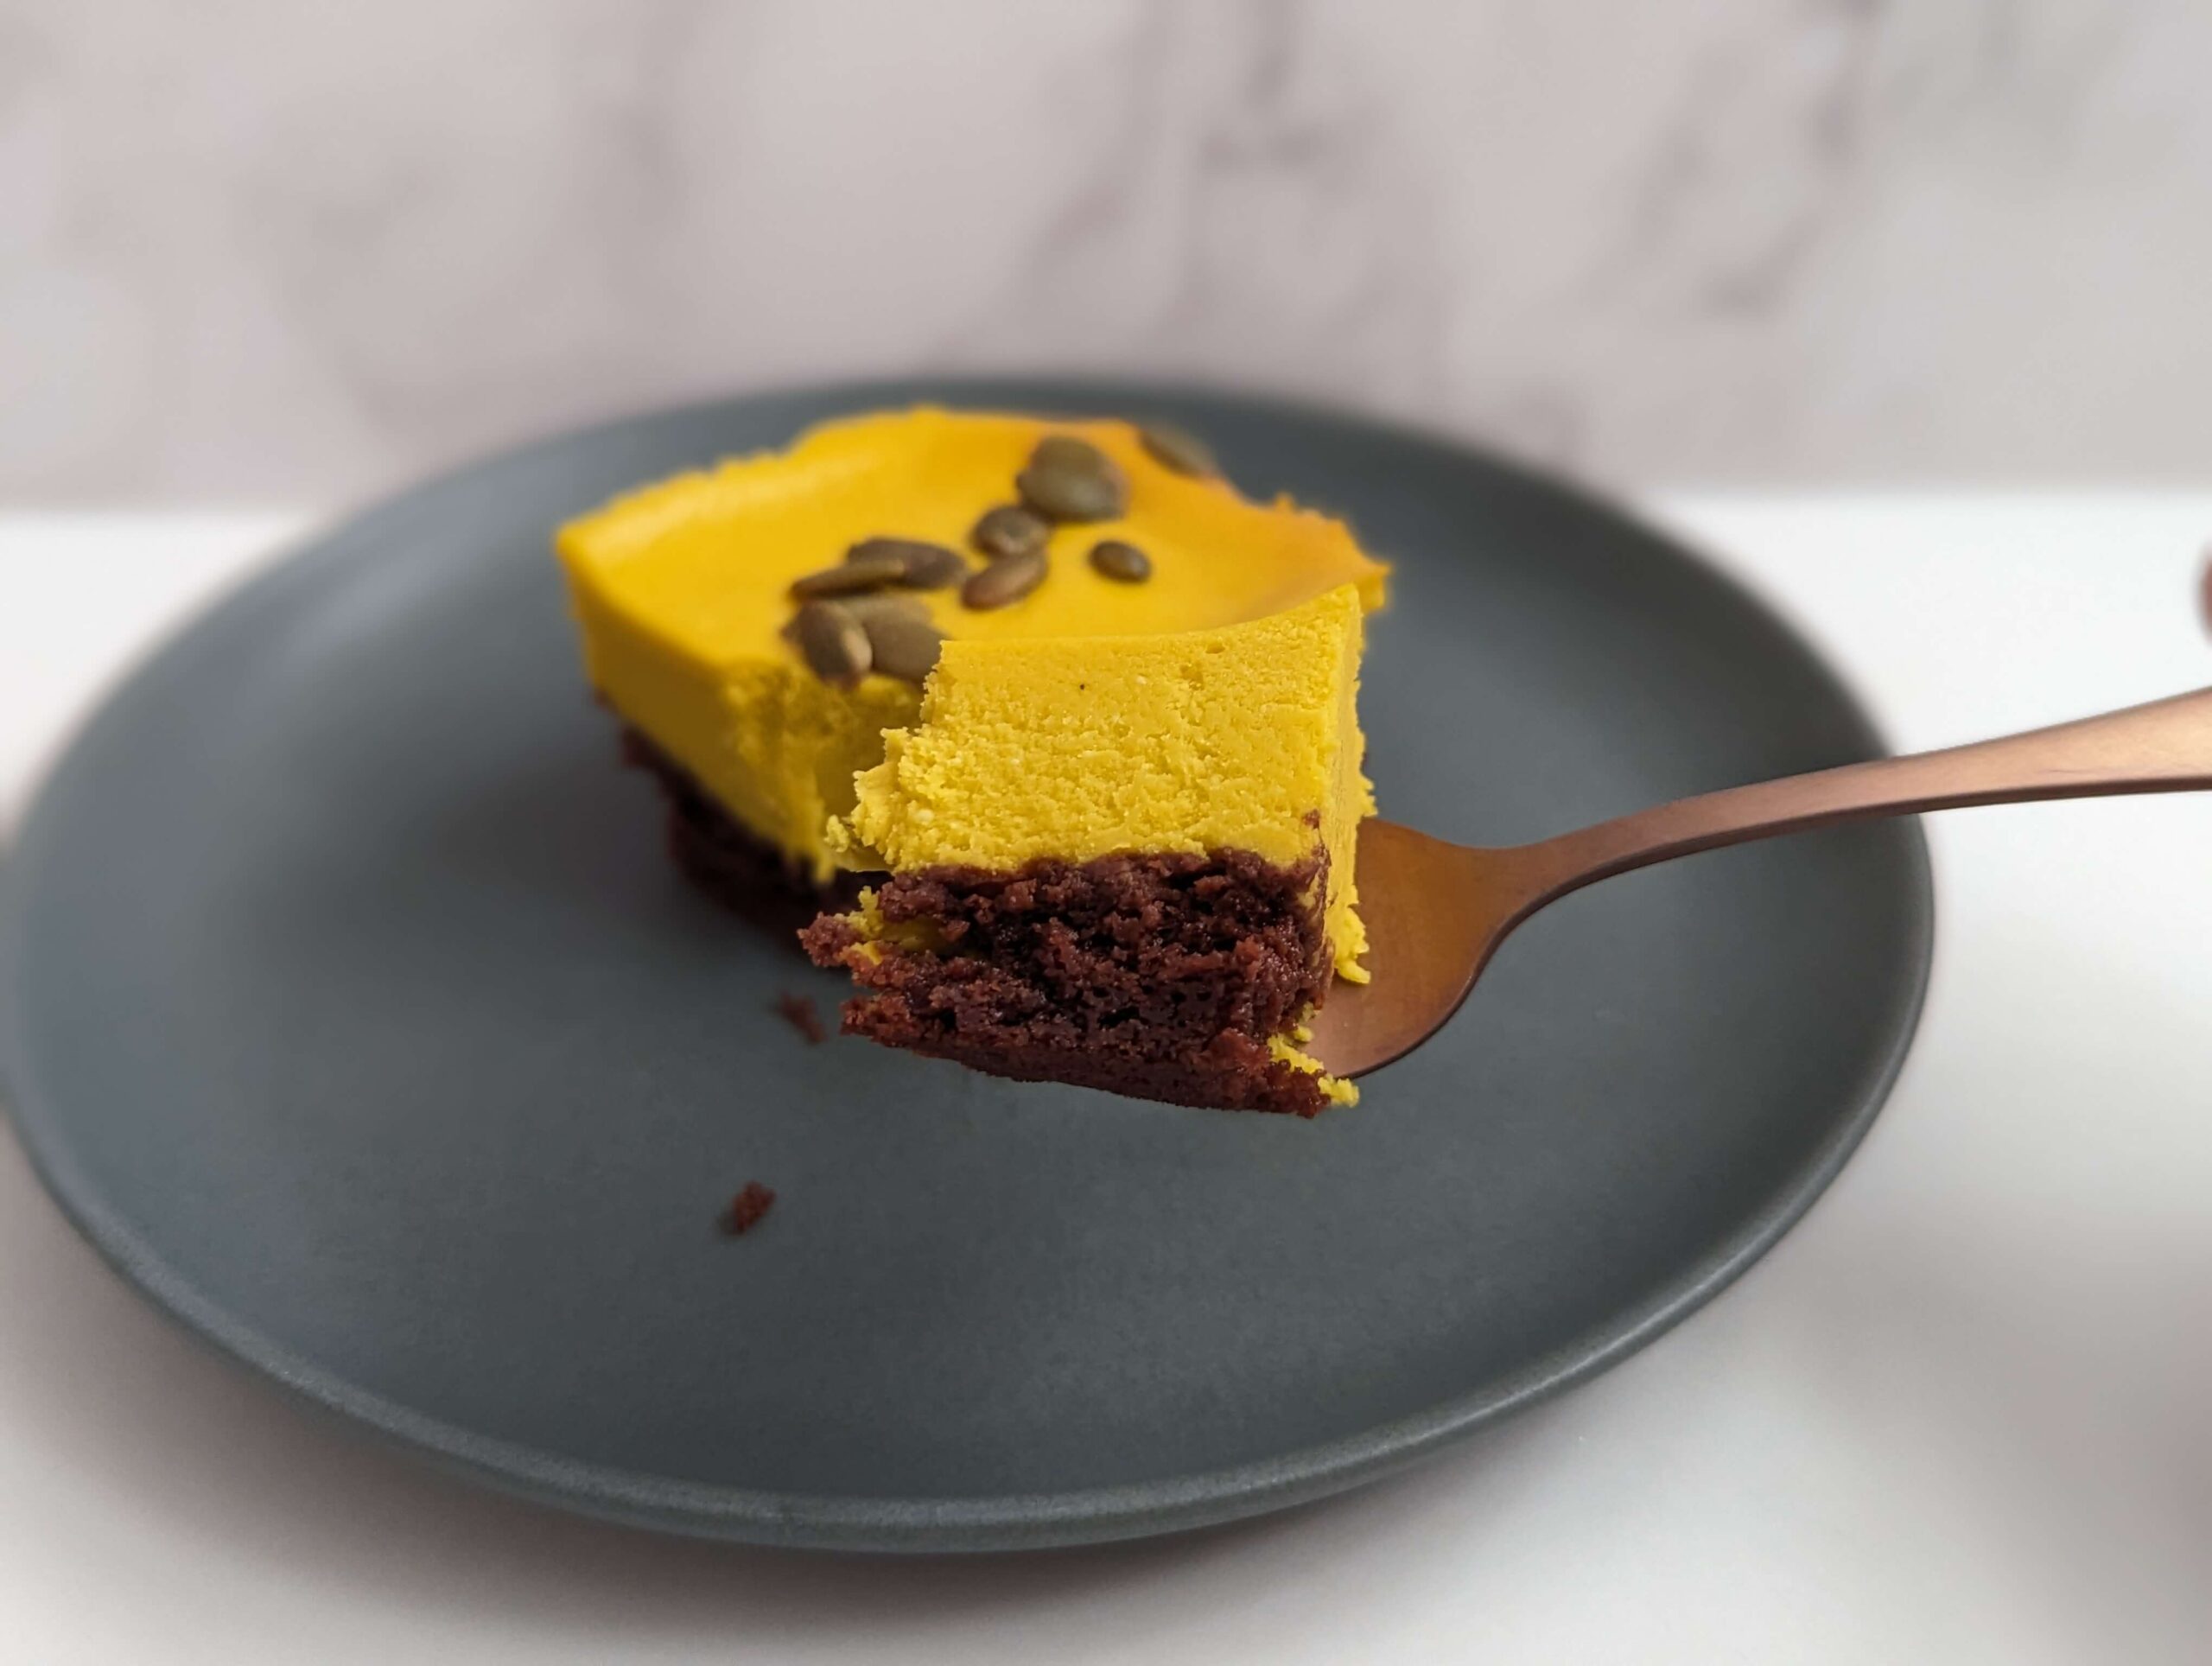 成城石井「北海道産かぼちゃのブラウニーパンプキンチーズケーキ」の写真